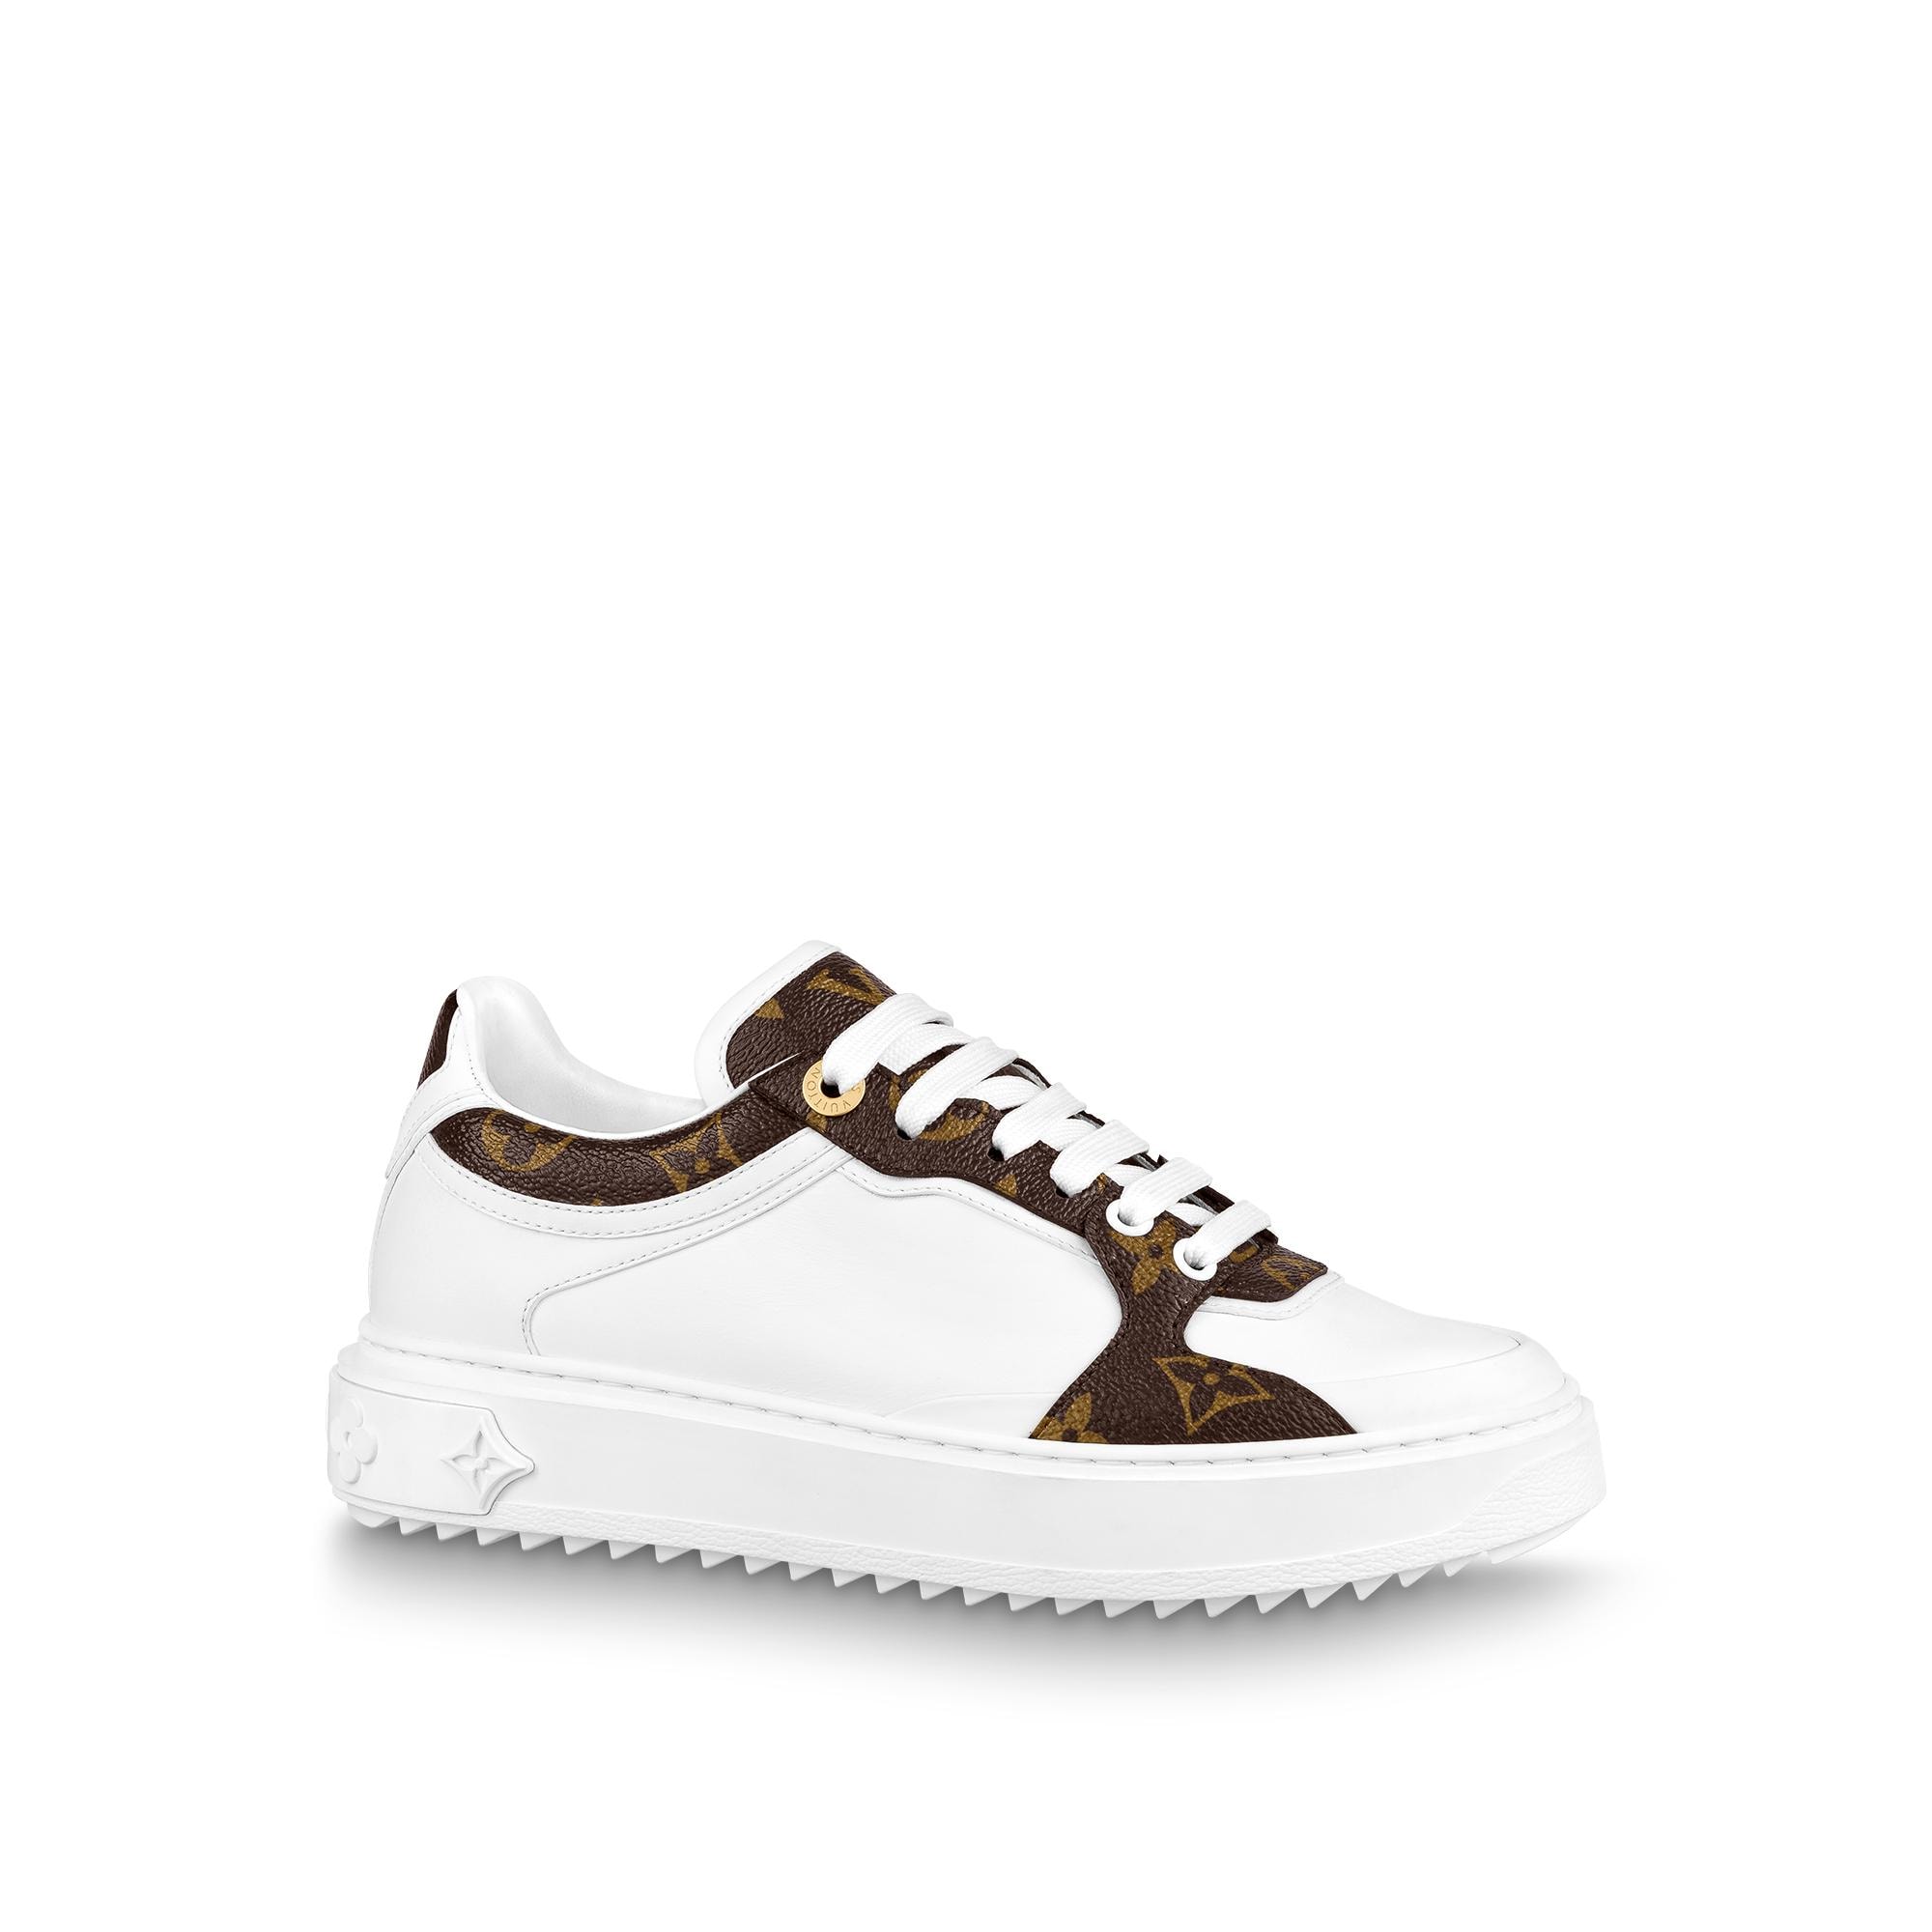 Louis Vuitton Run Away Sneaker in Rose - Shoes 1A94CF - $133.90 